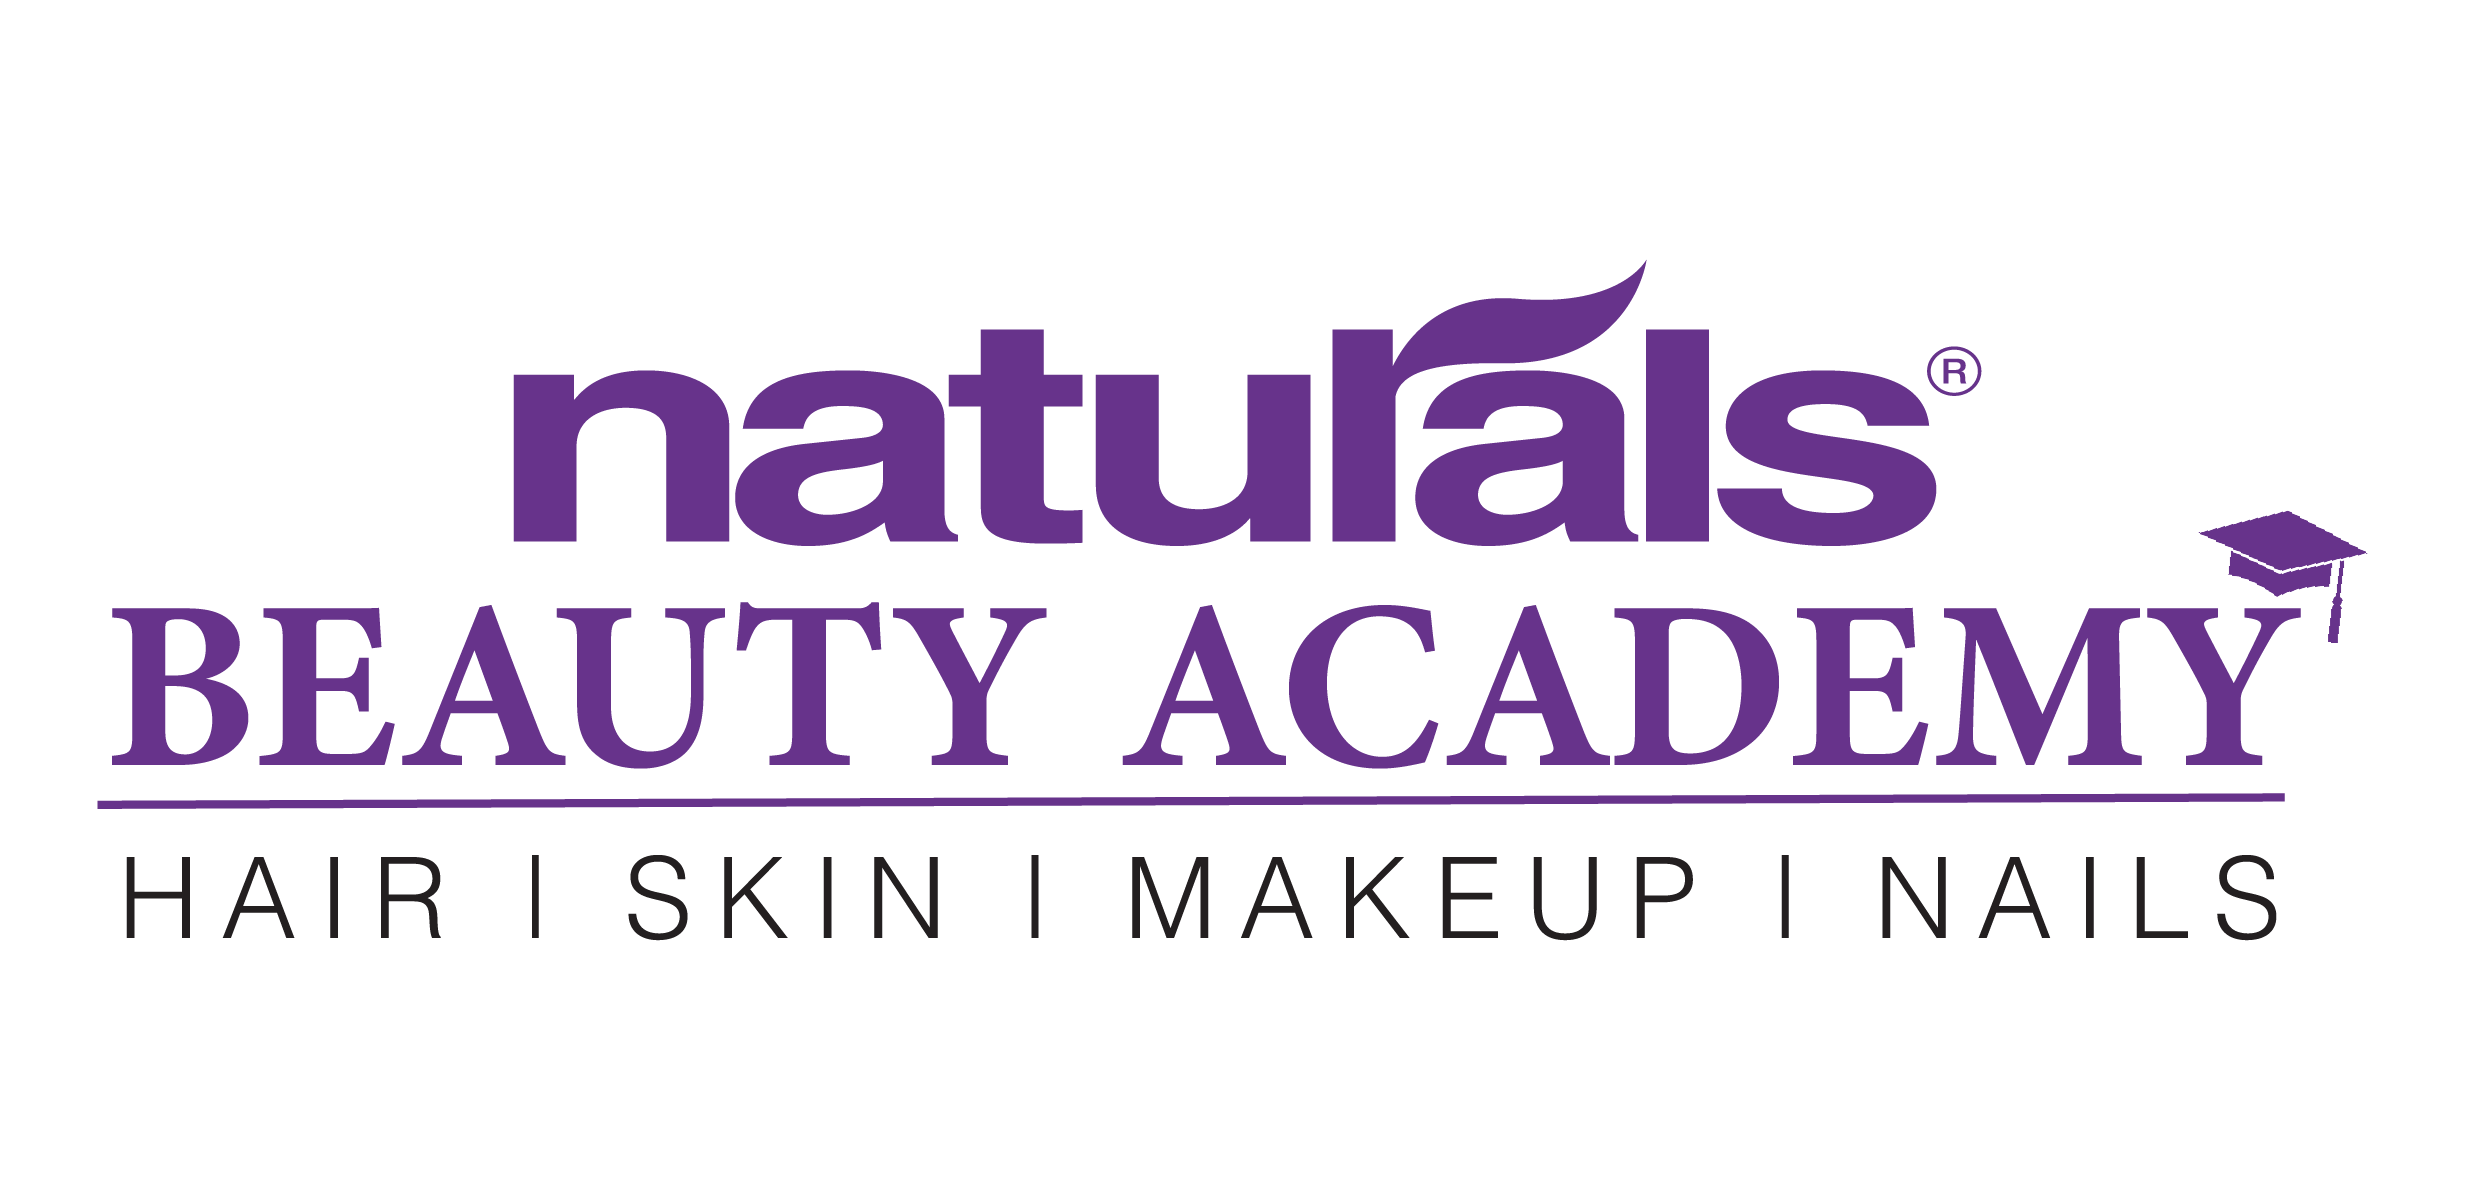 Naturals beauty academy